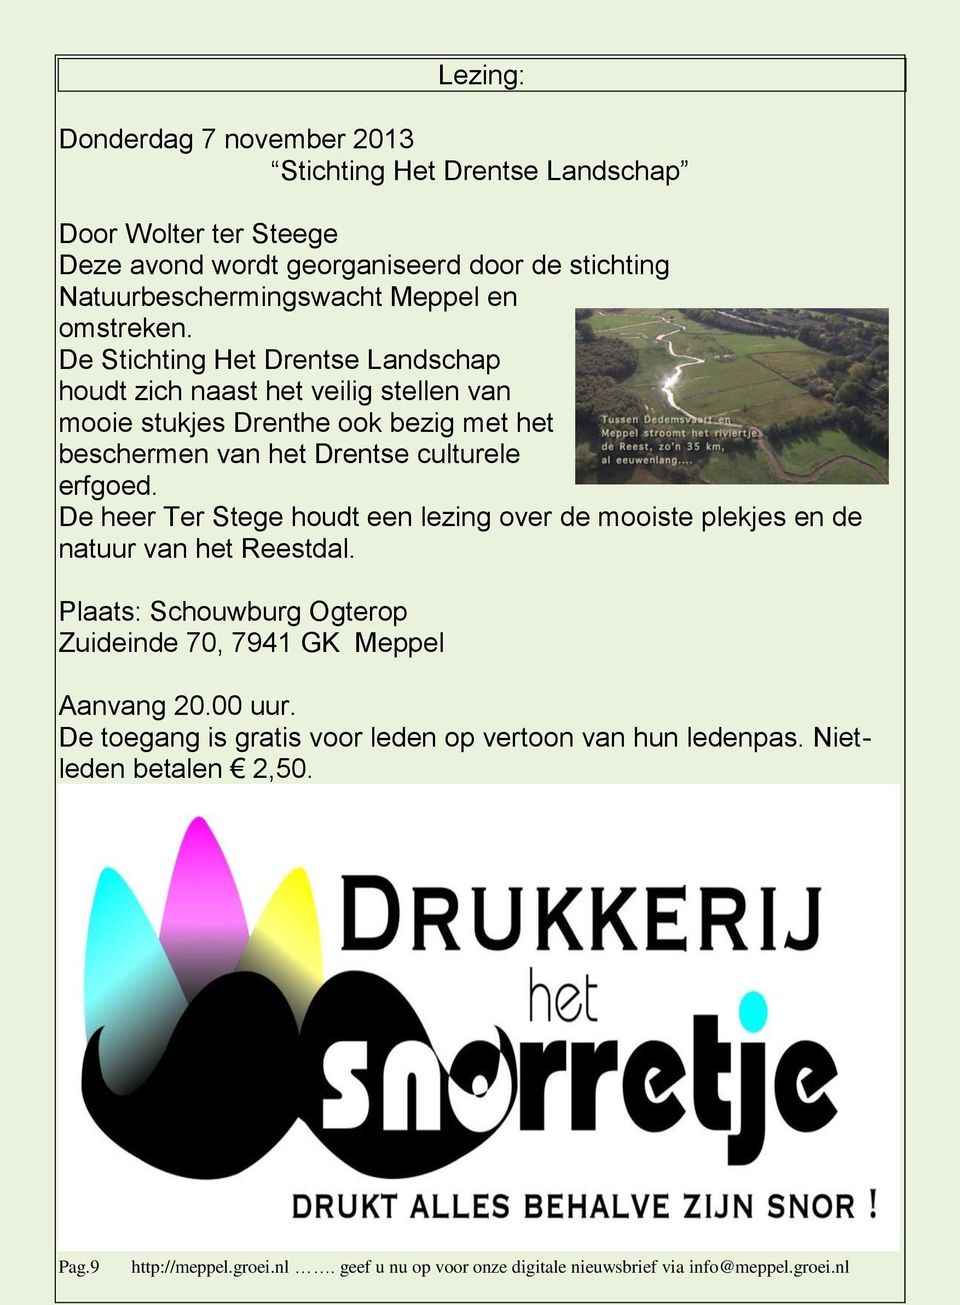 De Stichting Het Drentse Landschap houdt zich naast het veilig stellen van mooie stukjes Drenthe ook bezig met het beschermen van het Drentse